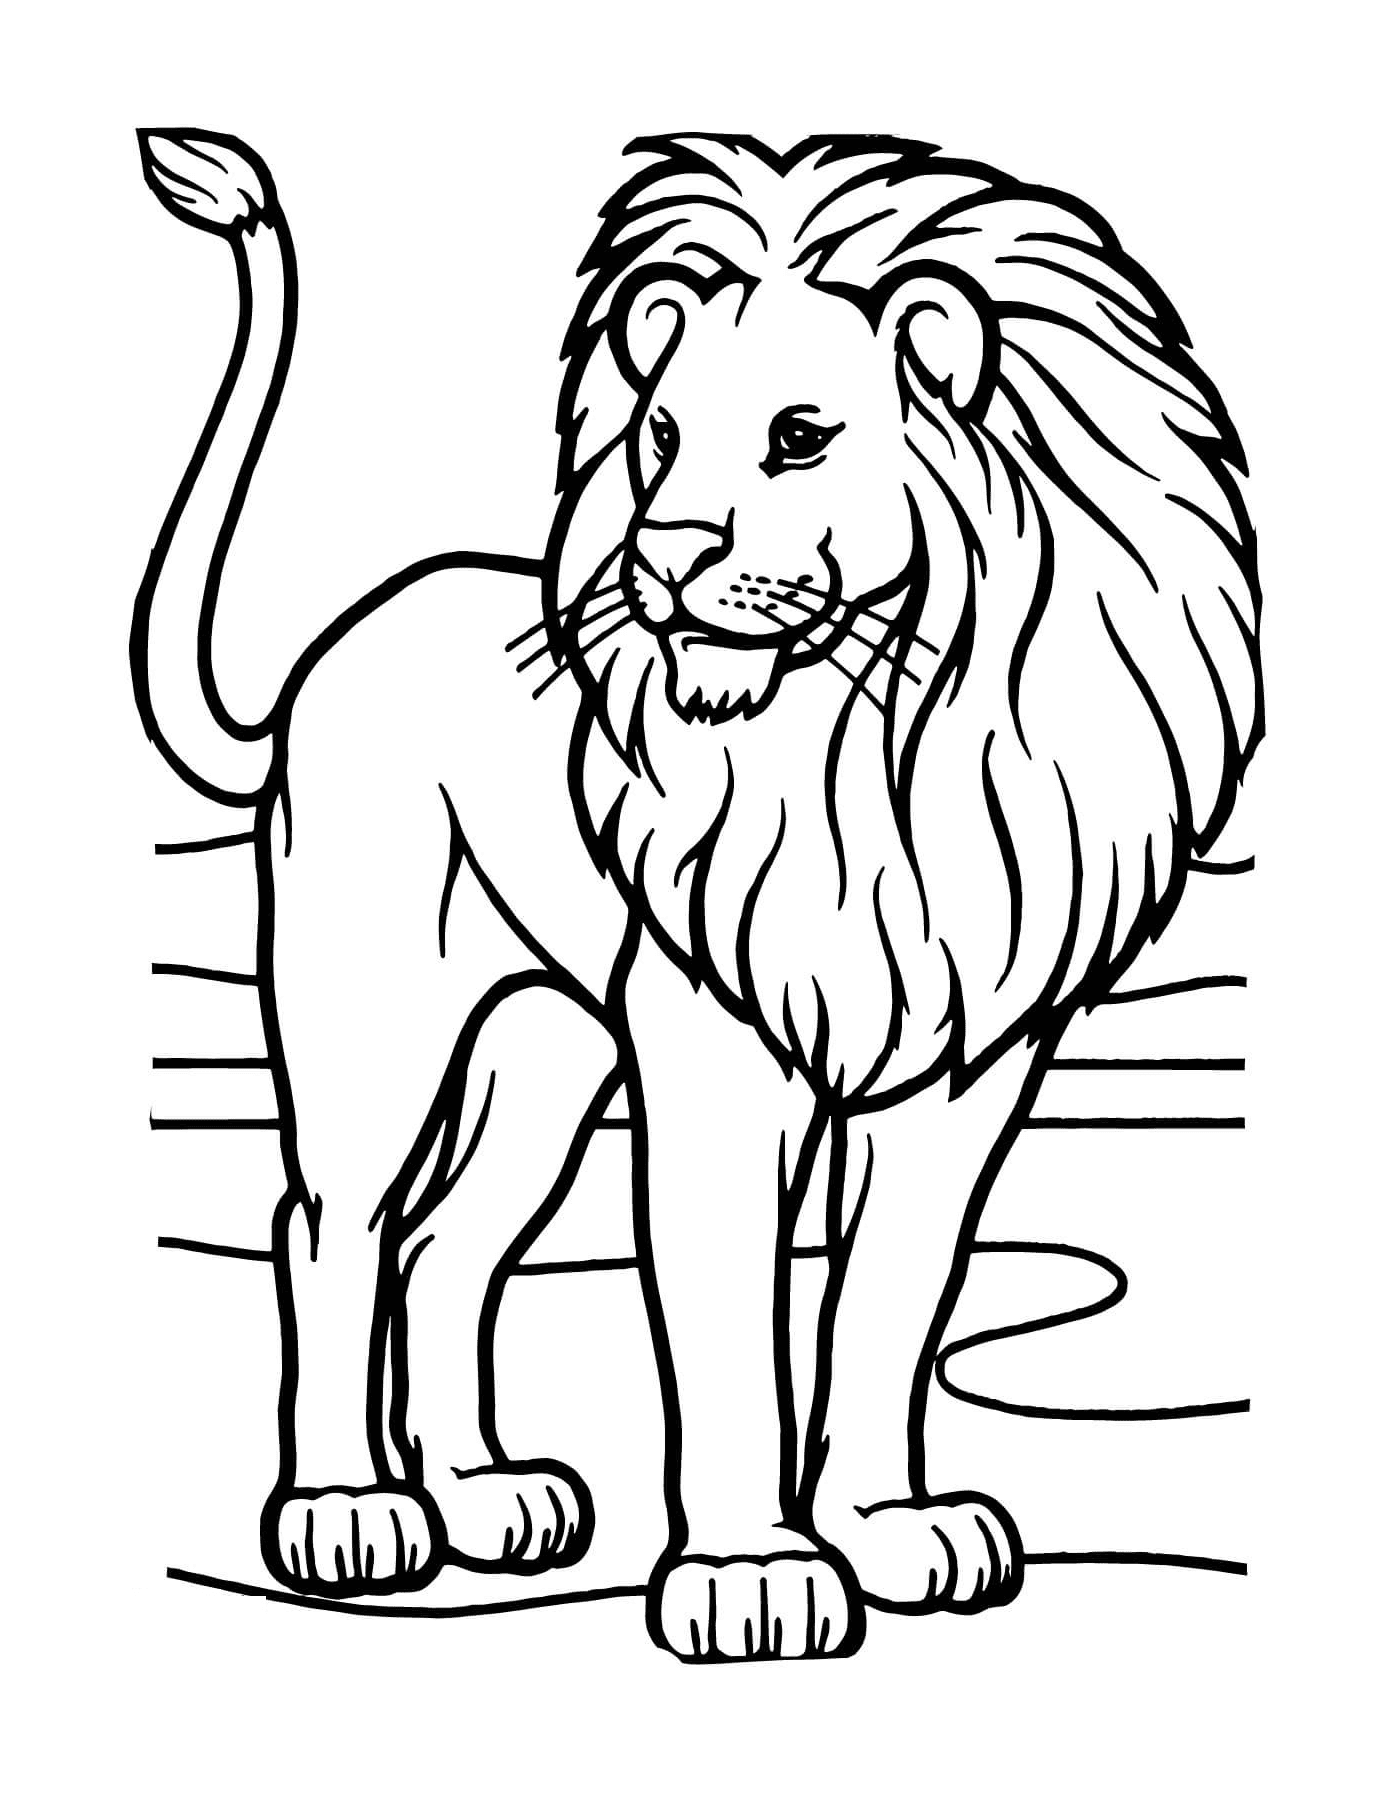  Leão selvagem da África 